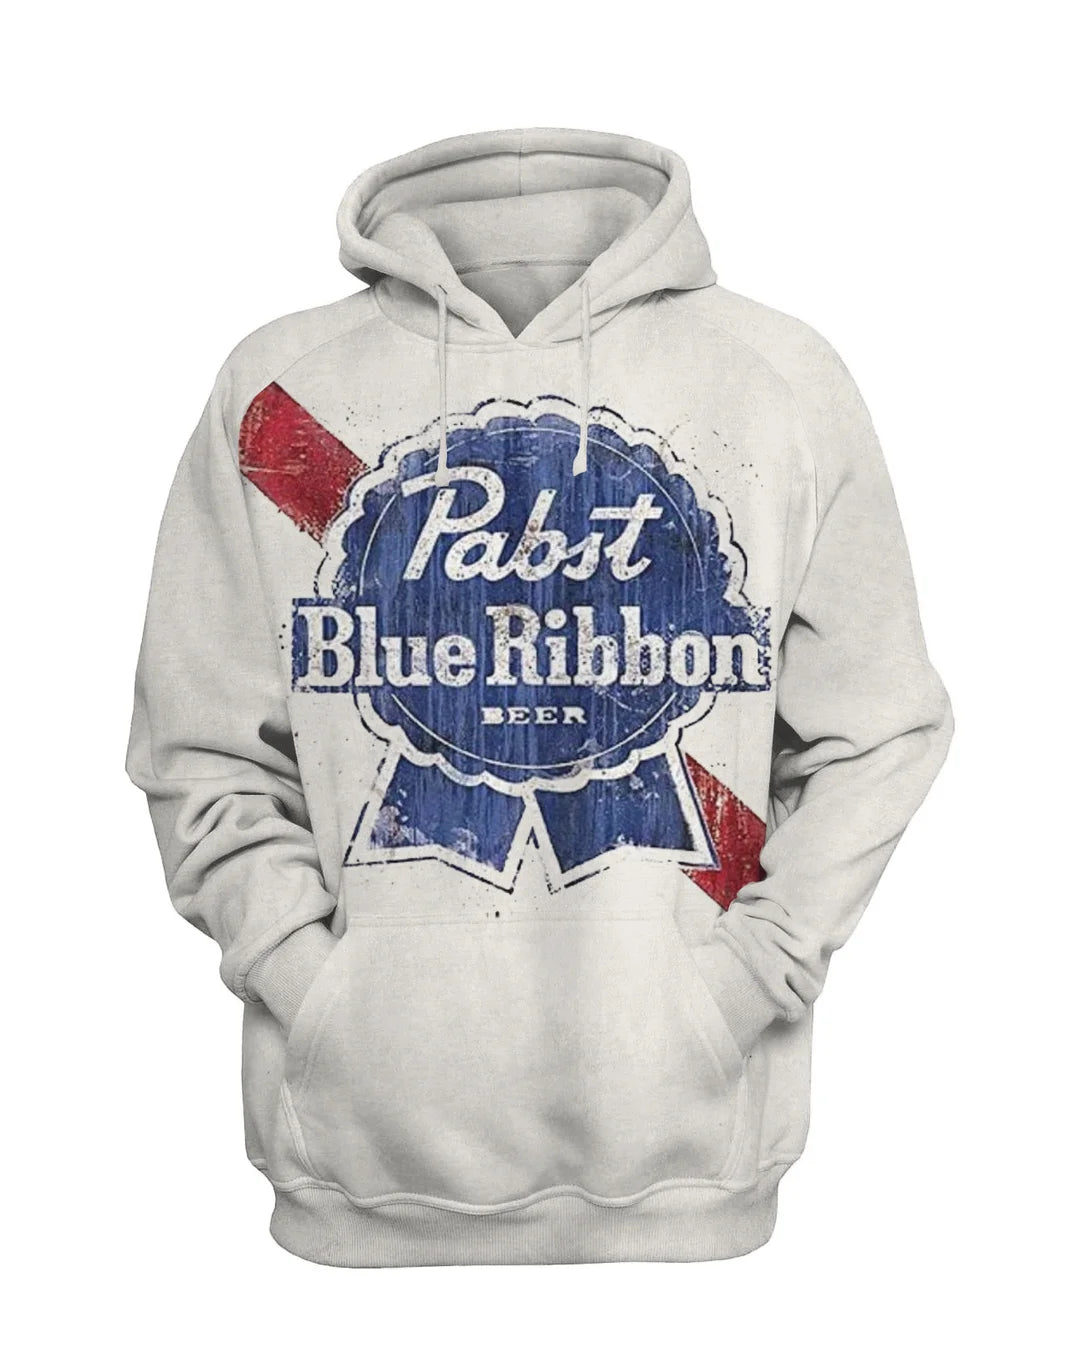 Blue Ribbons Vintage Men's Beer Sweatshirt Set - DUVAL